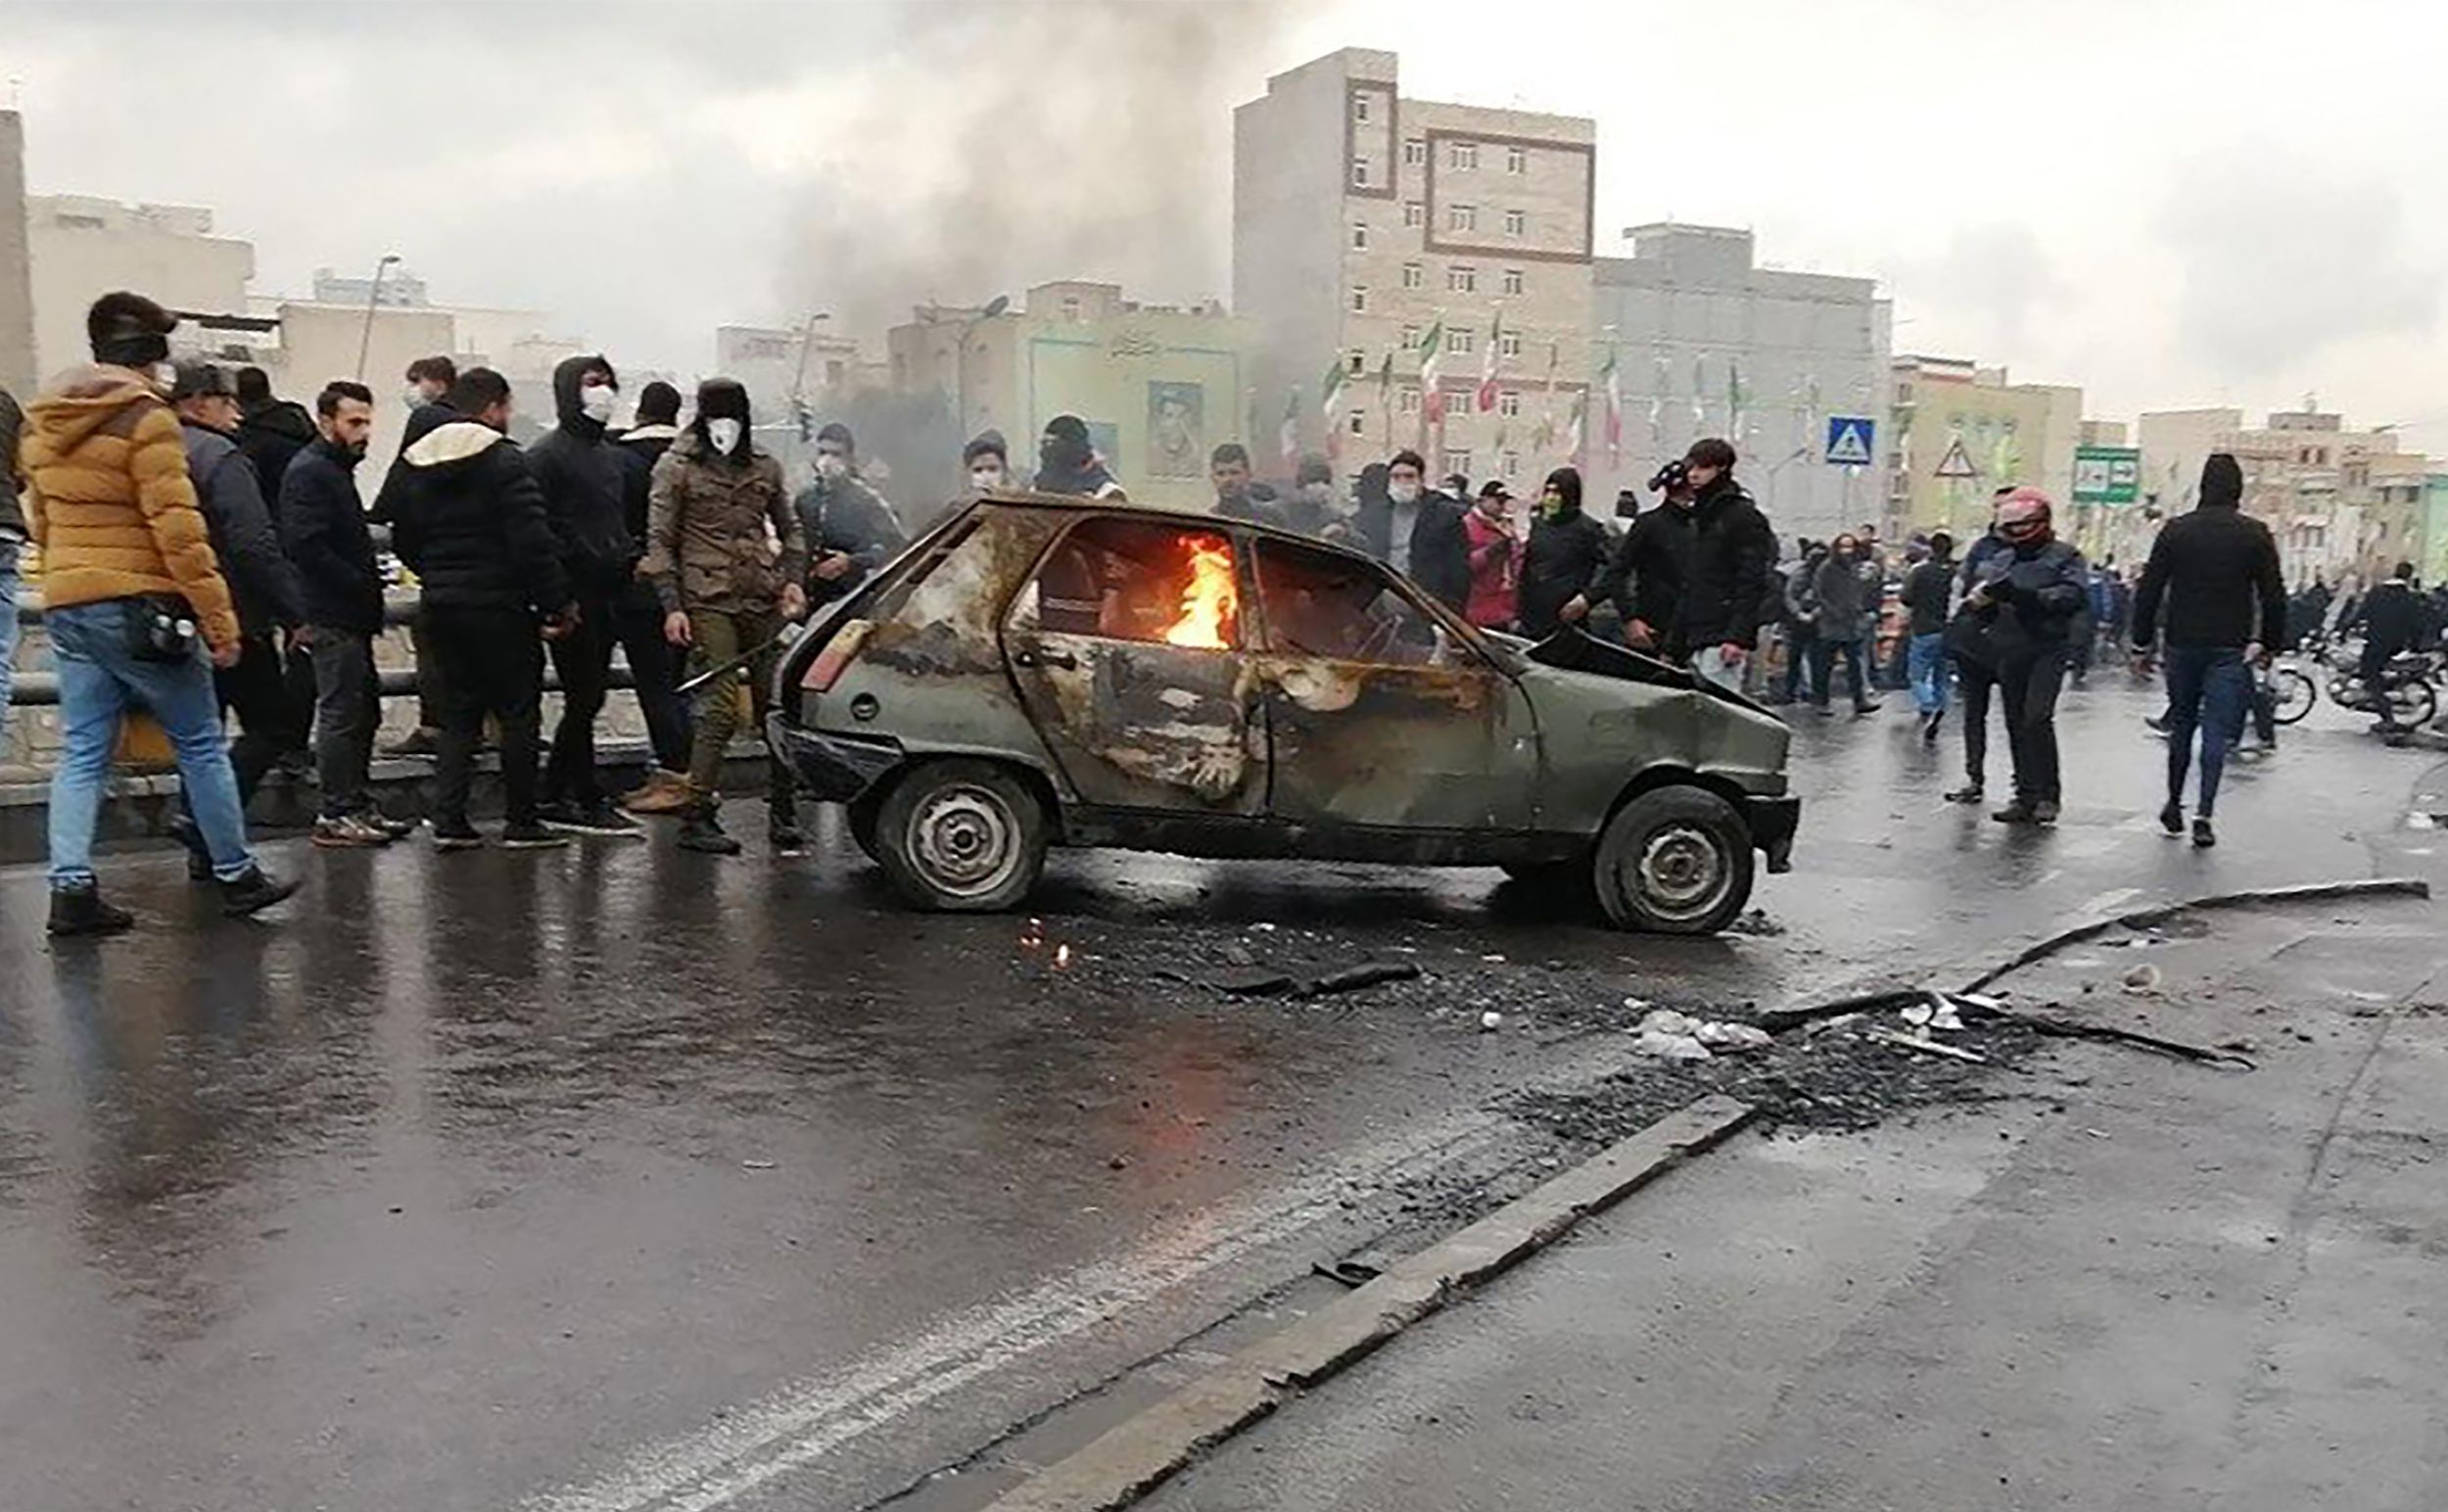 Las cifras de víctimas asesinadas por la Guardia Revolucionaria Islámica varían entre 180 y 450 (AFP)